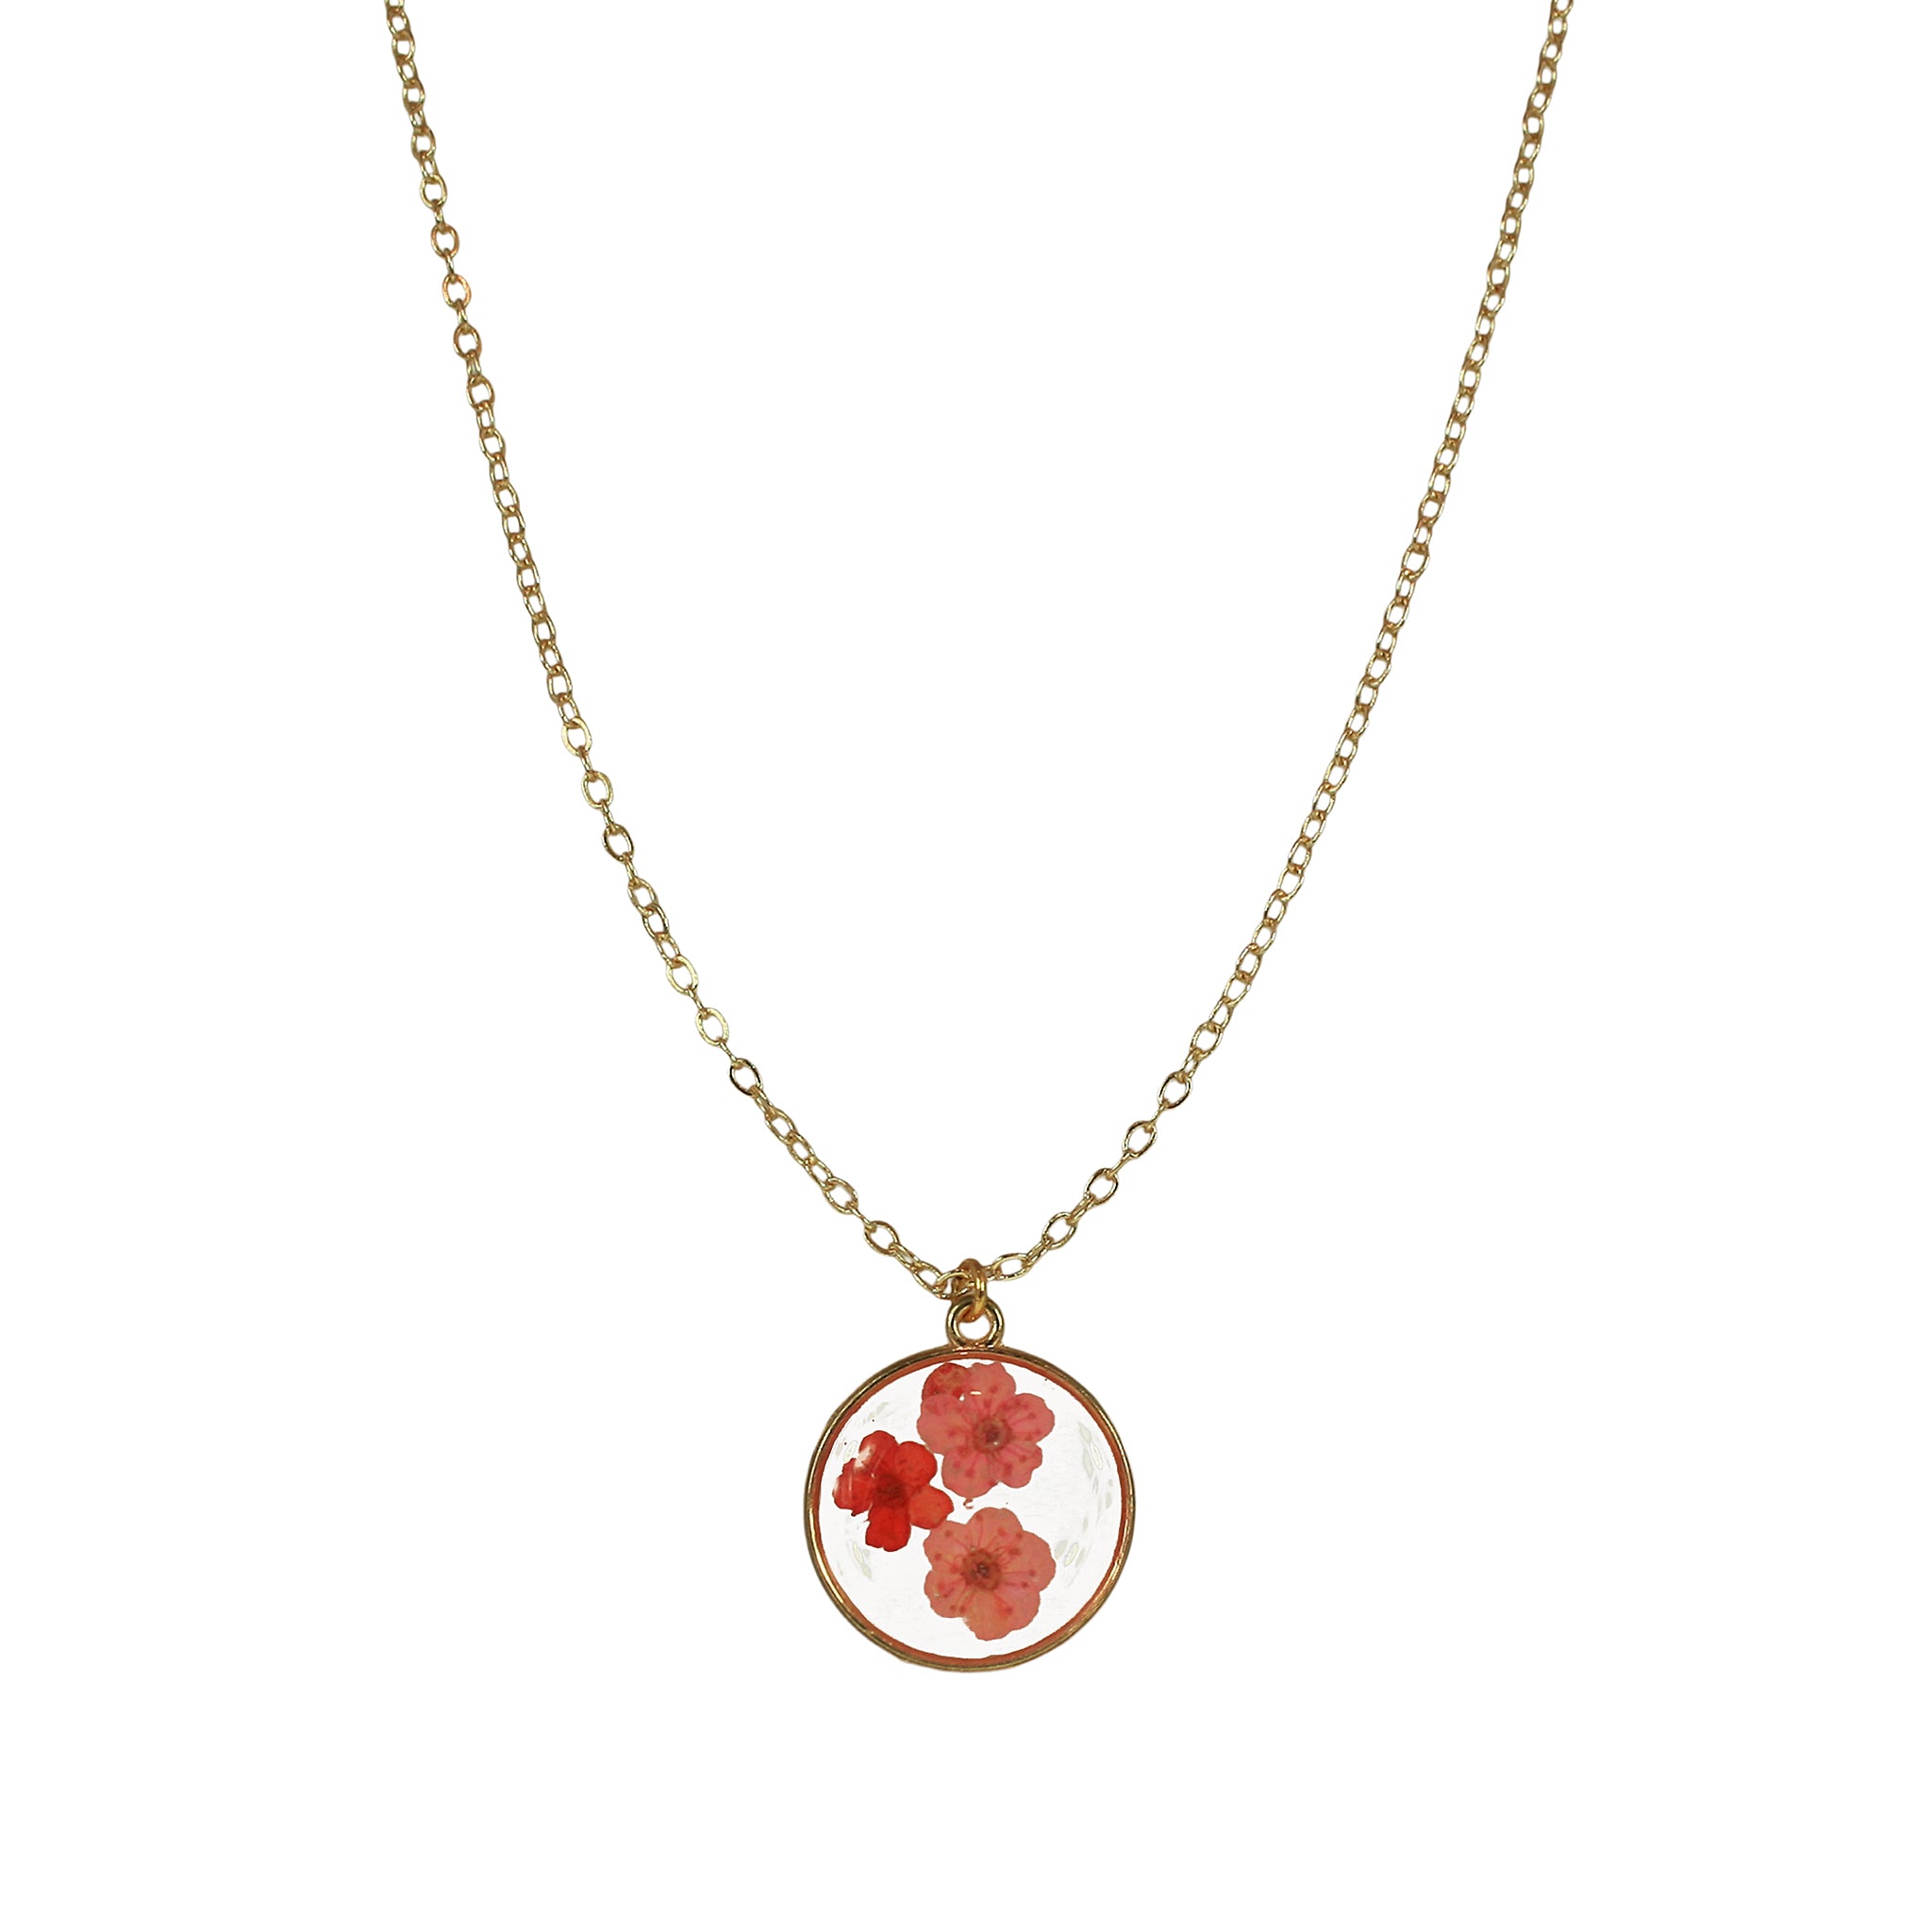 14k Gold Filled Pressed Flower Pendant Necklace